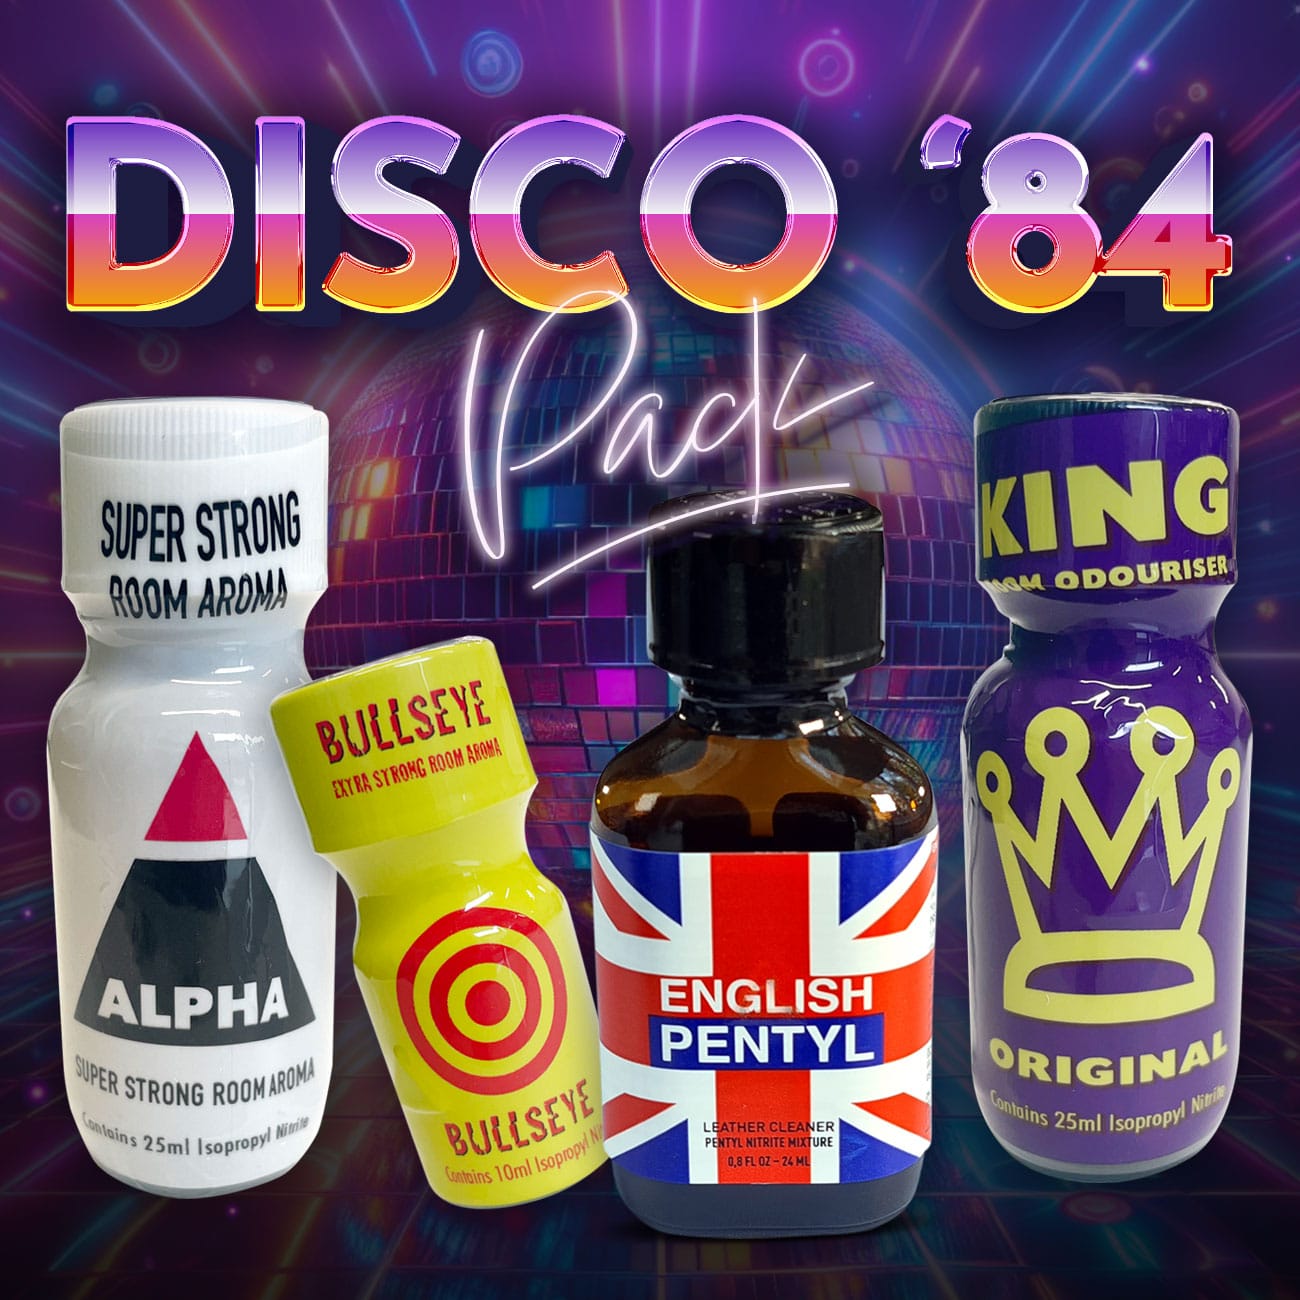 Disco ’84 pack